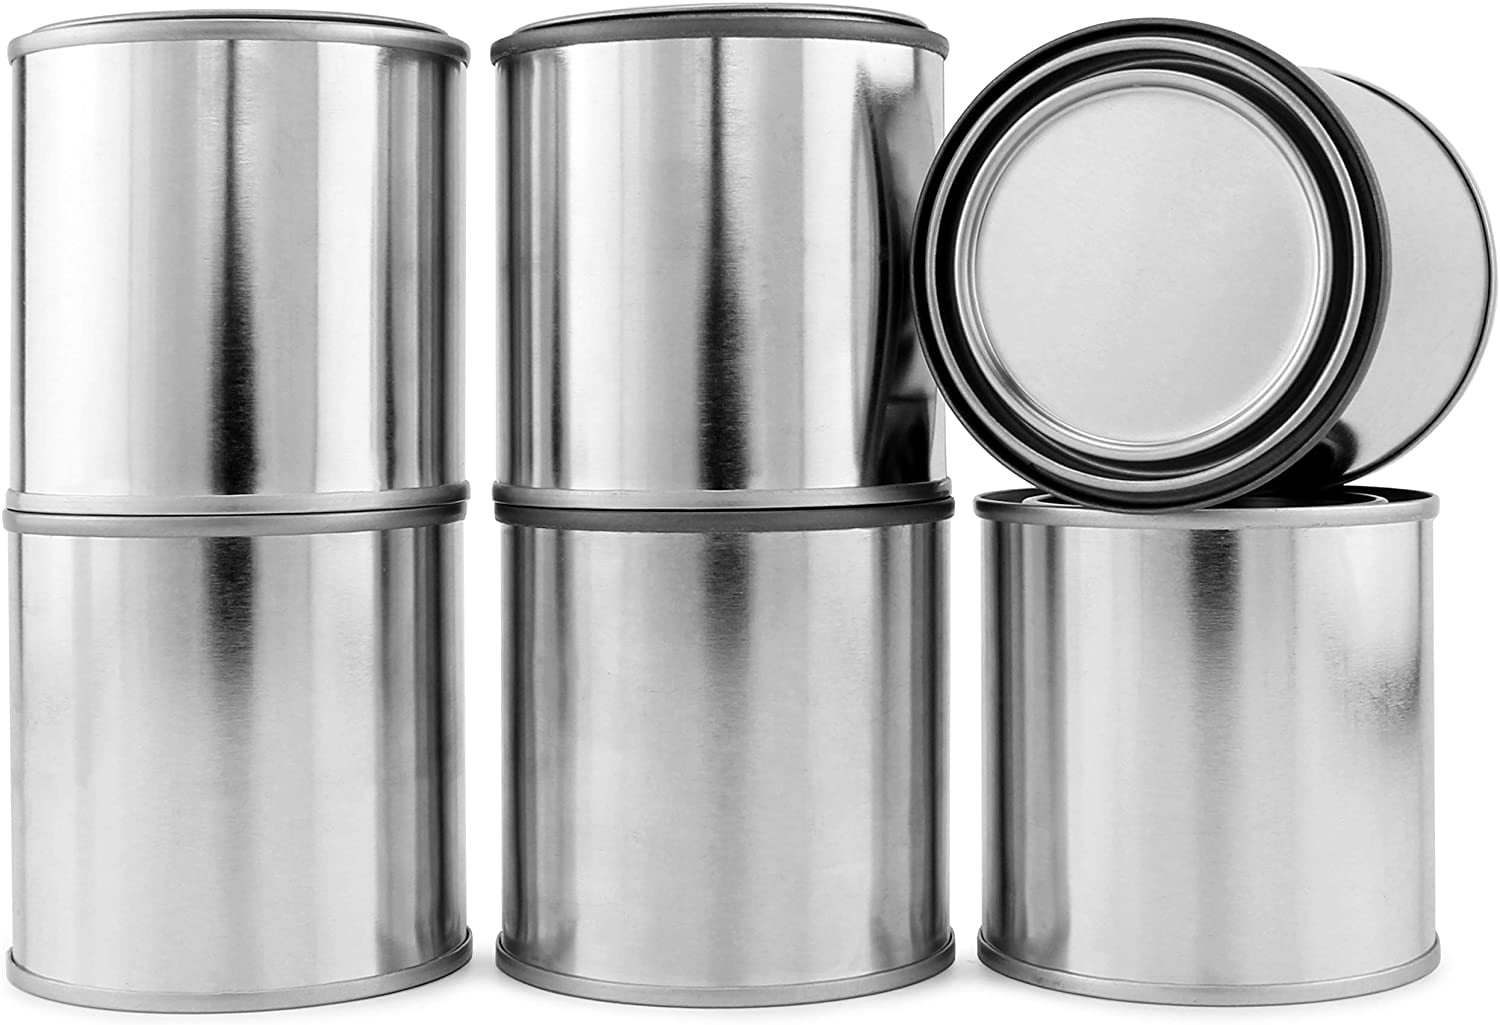 Cornucopia Metal Paint Cans with Lids (1/2 Pint Size, 6-Pack), 1